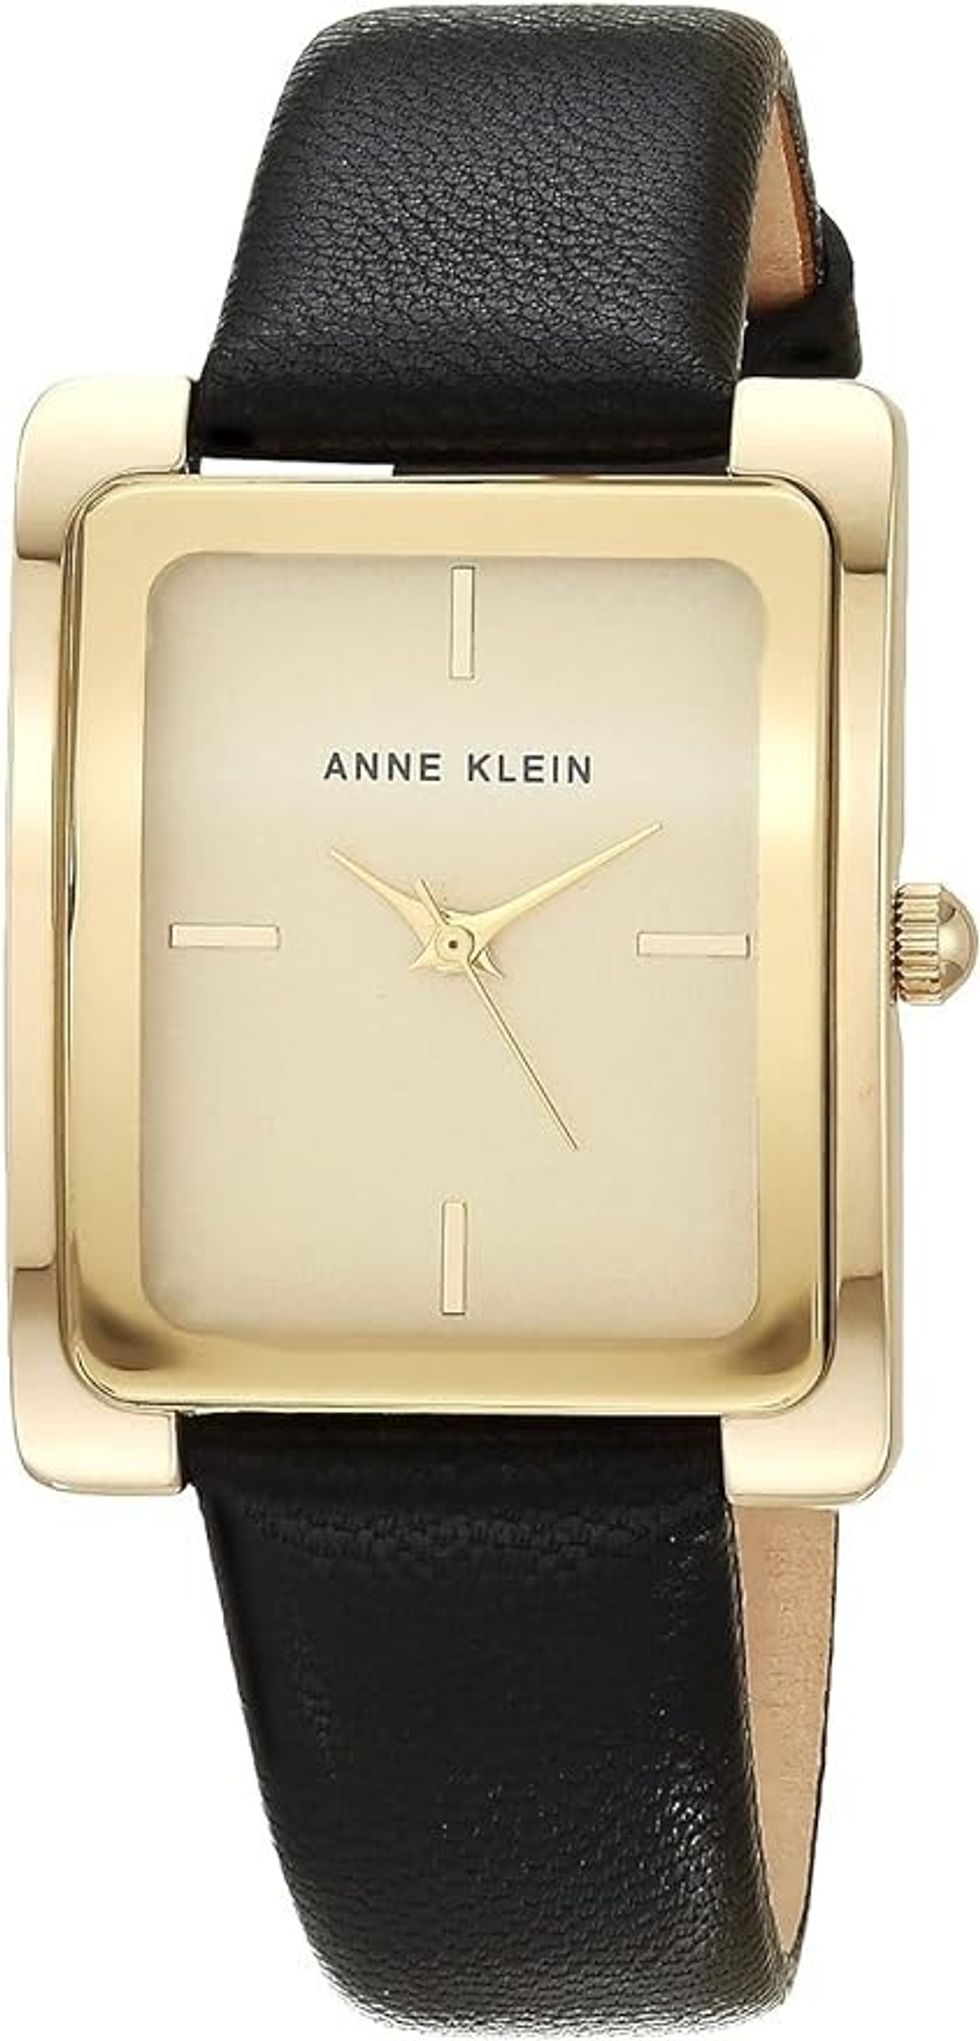 Anne Klein Leather Strap Watch